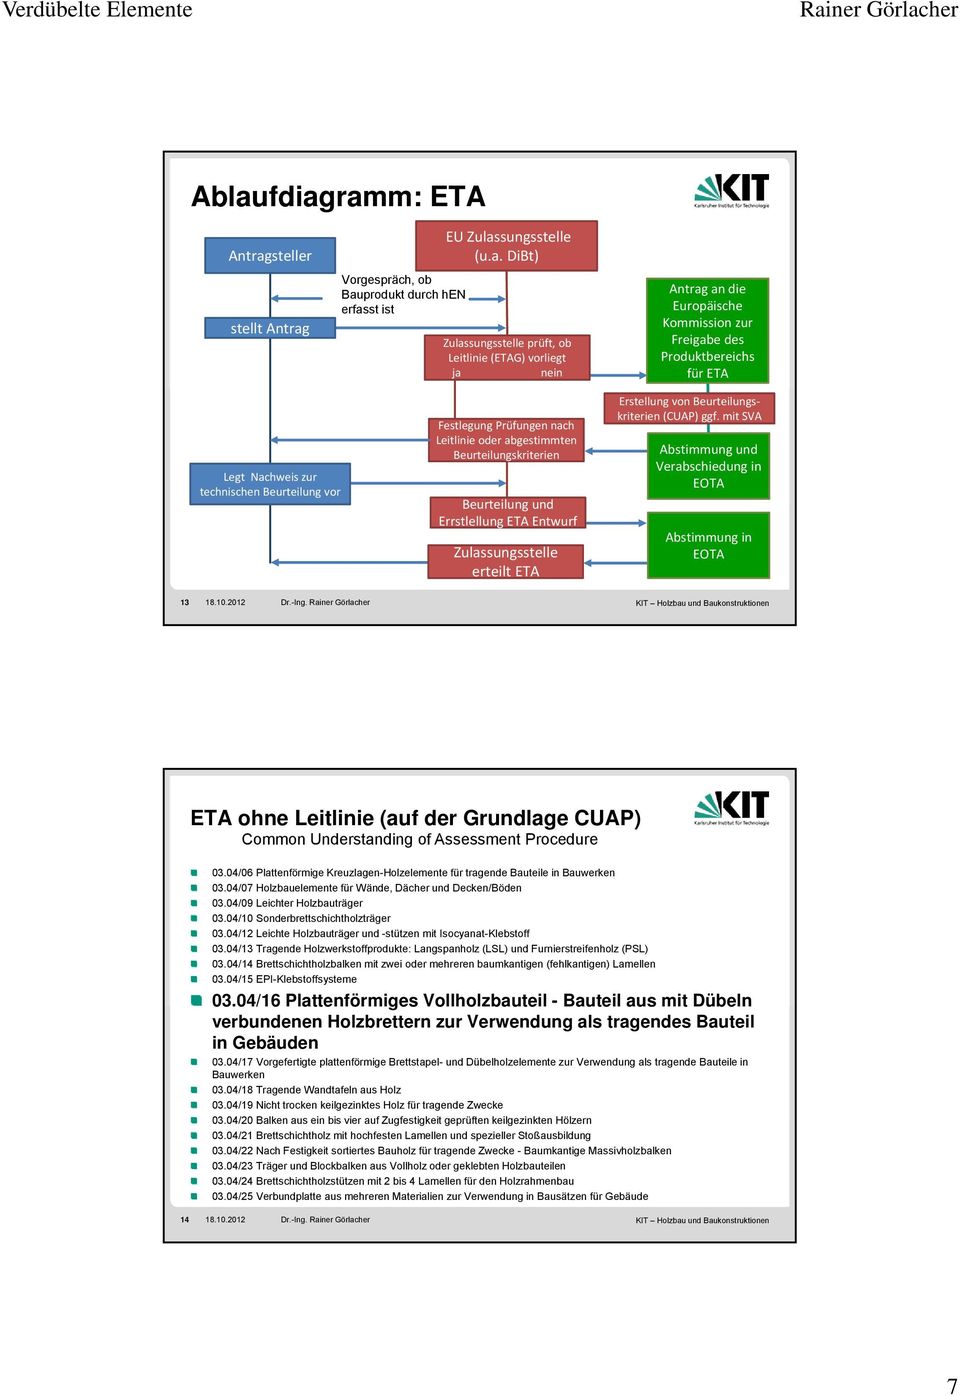 Beurteilung und Errstlellung ETA Entwurf Zulassungsstelle erteilt ETA Erstellung von Beurteilungskriterien (CUAP) ggf. mit SVA Abstimmung und Verabschiedung in EOTA Abstimmung in EOTA 13 18.10.